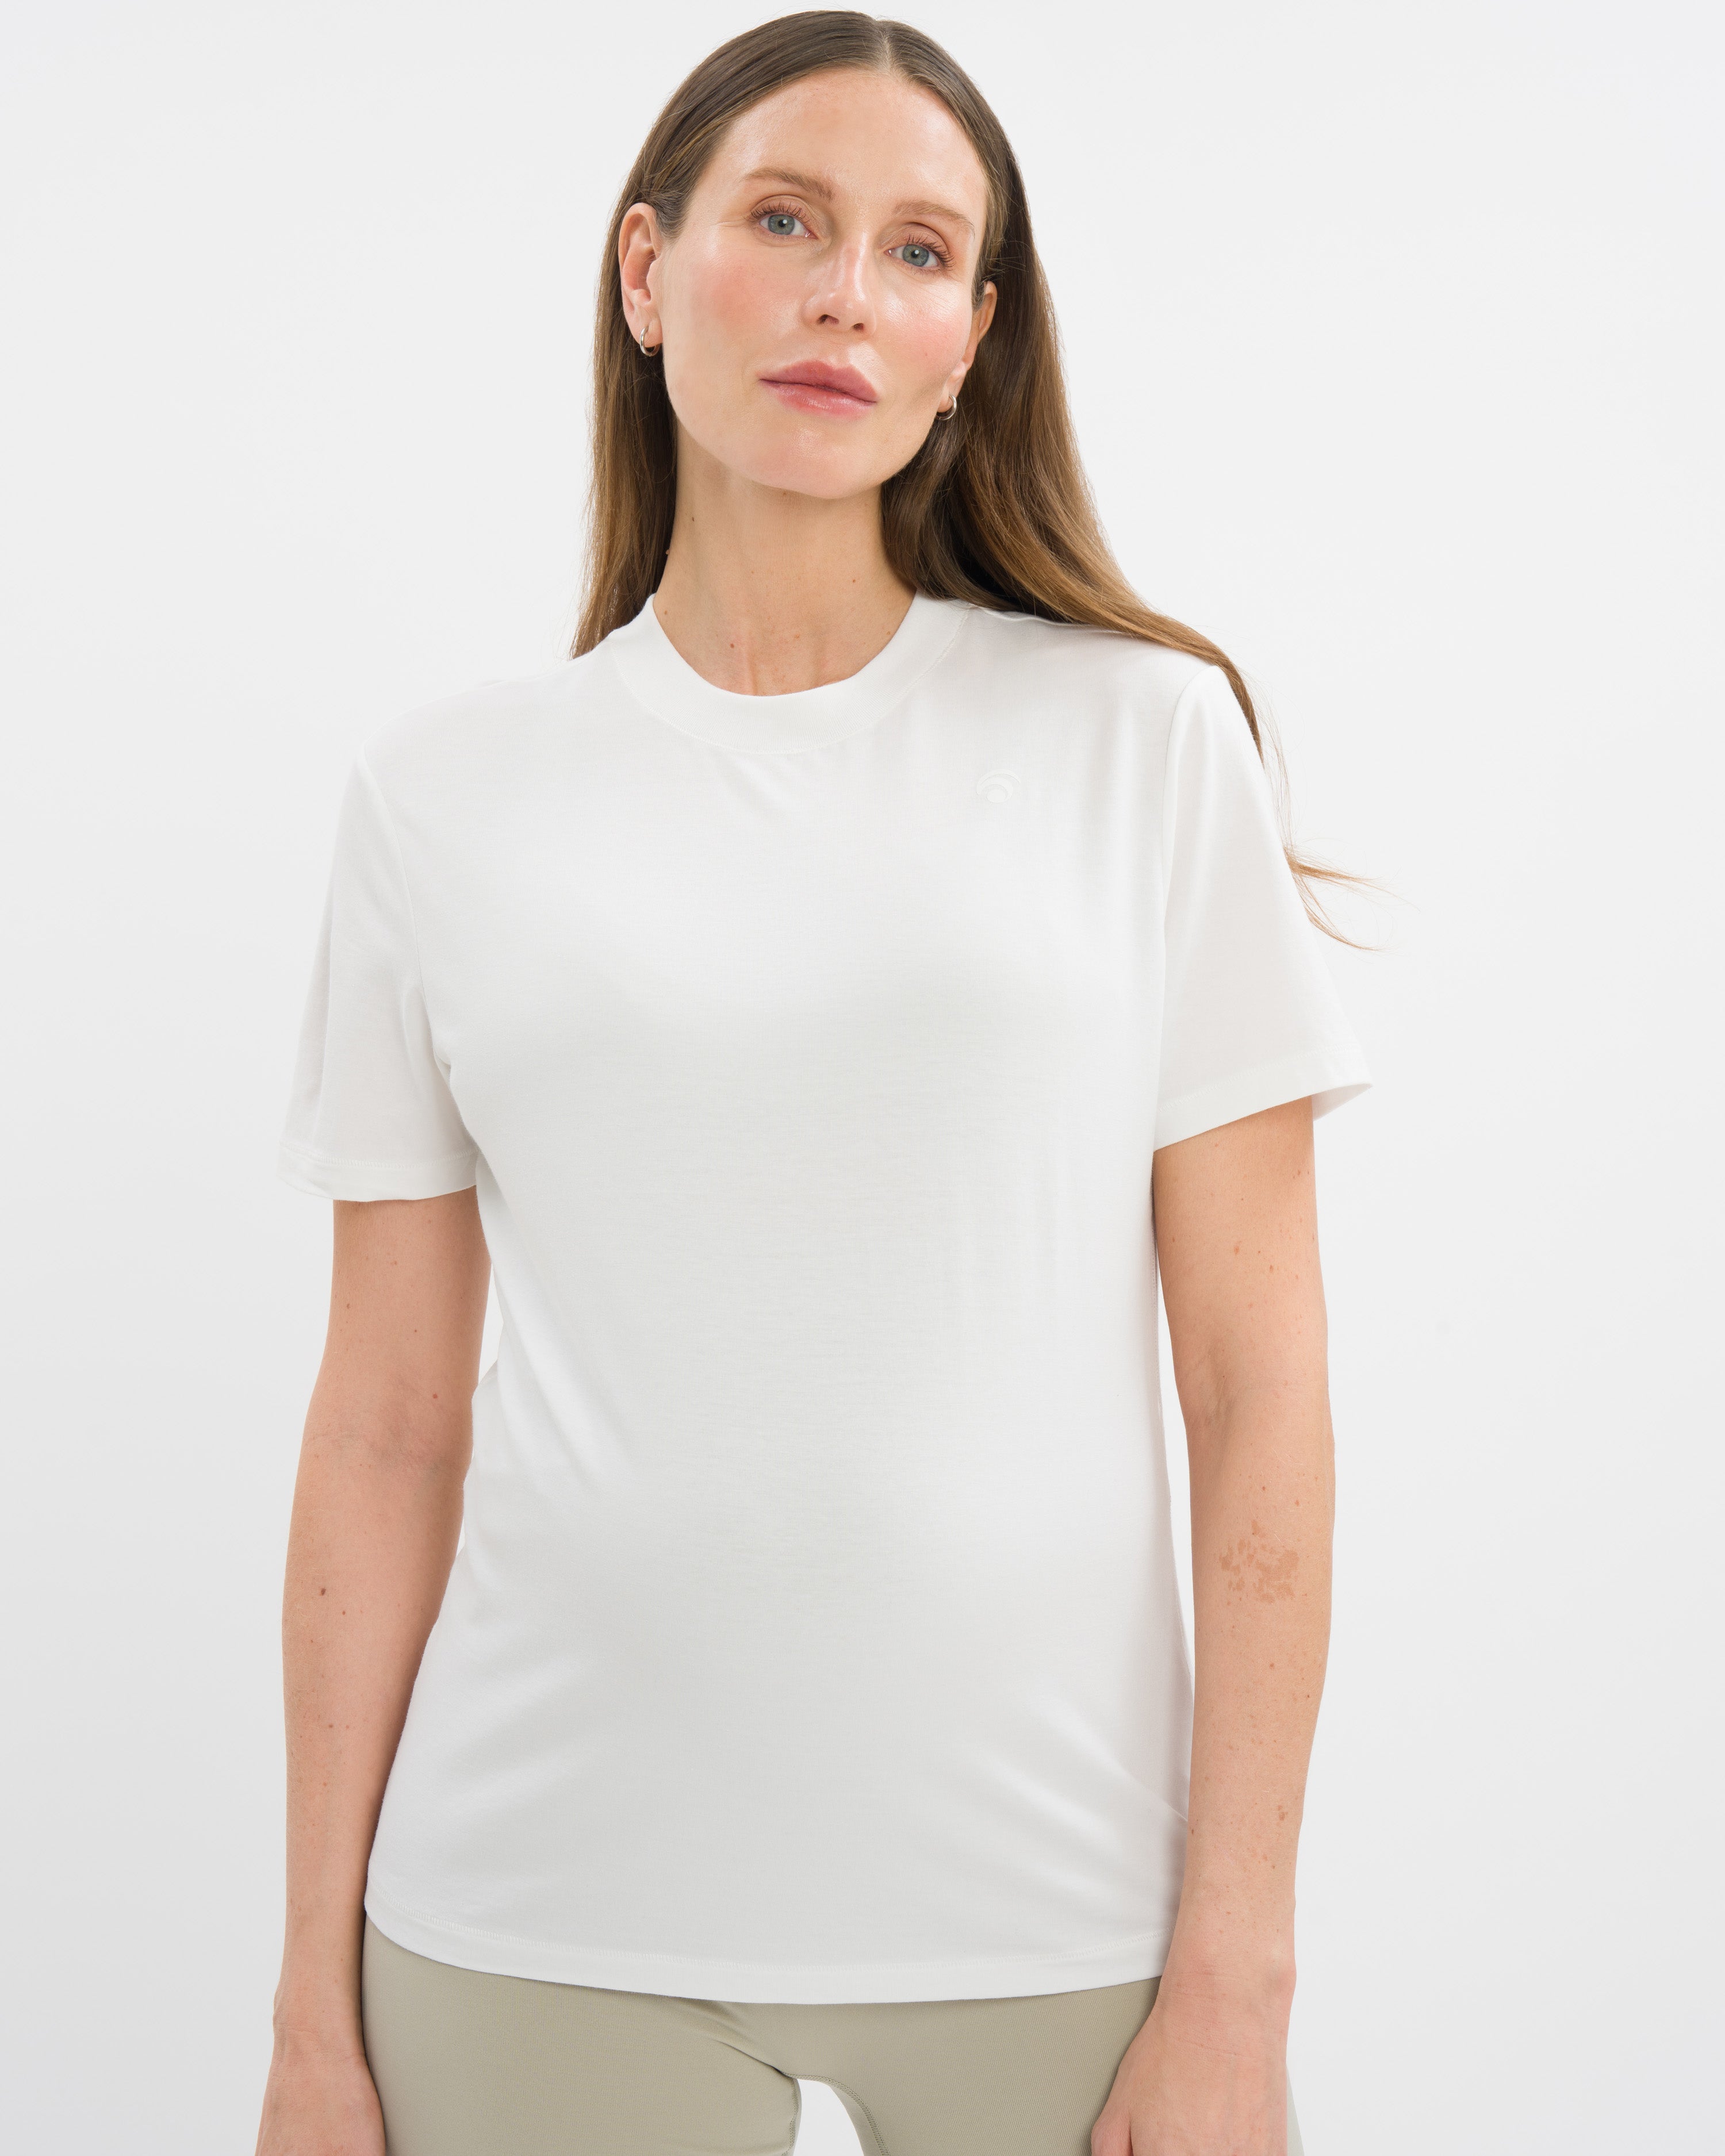 Staple T-Shirt Set Deluxe - Light Serenity Blue & White